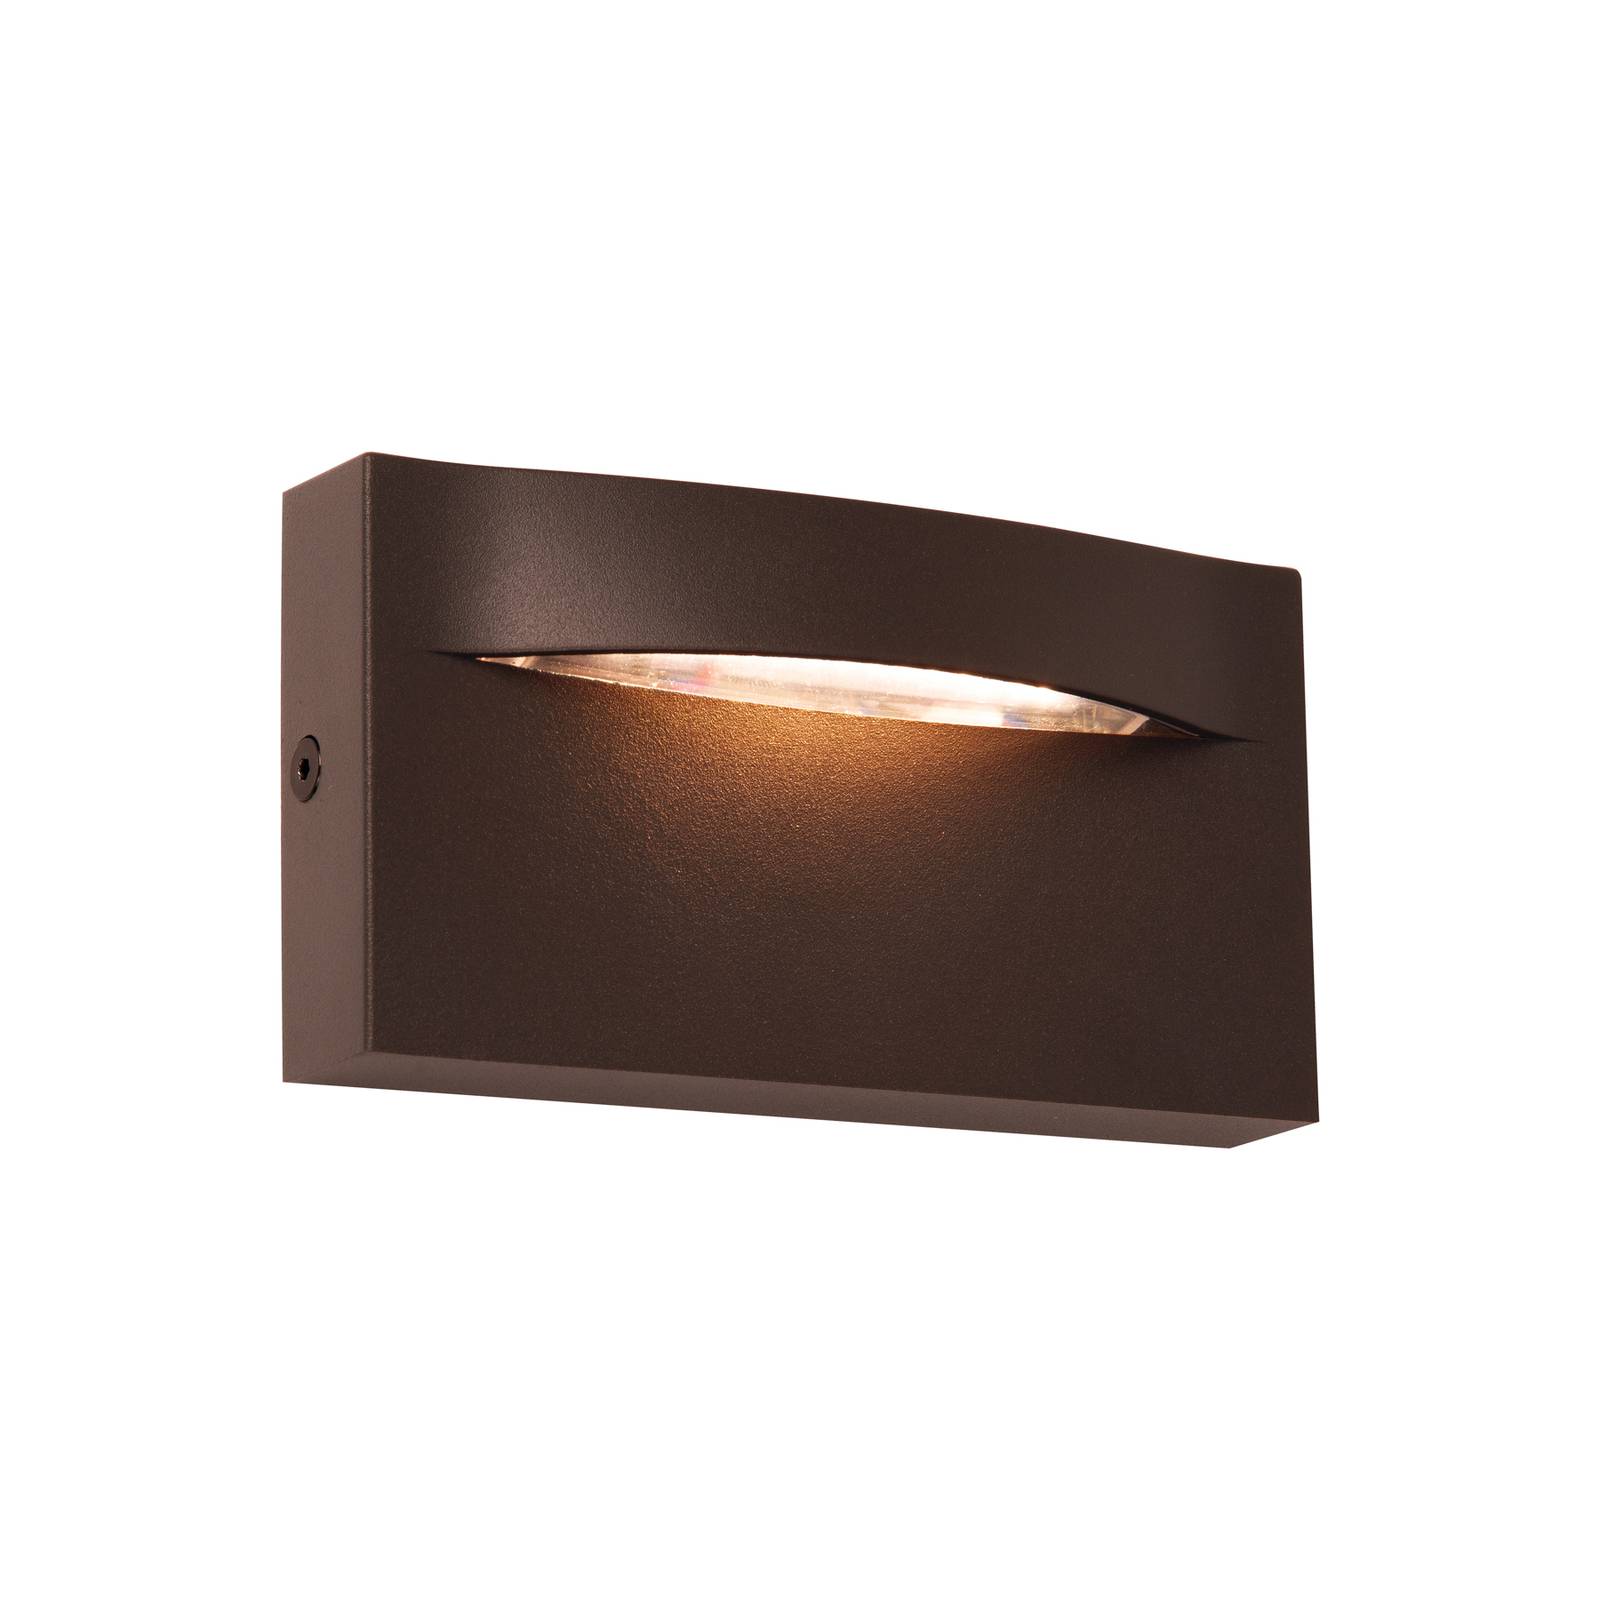 LED udendørs væglampe Vita rustbrun 13,7 x 7,5 cm